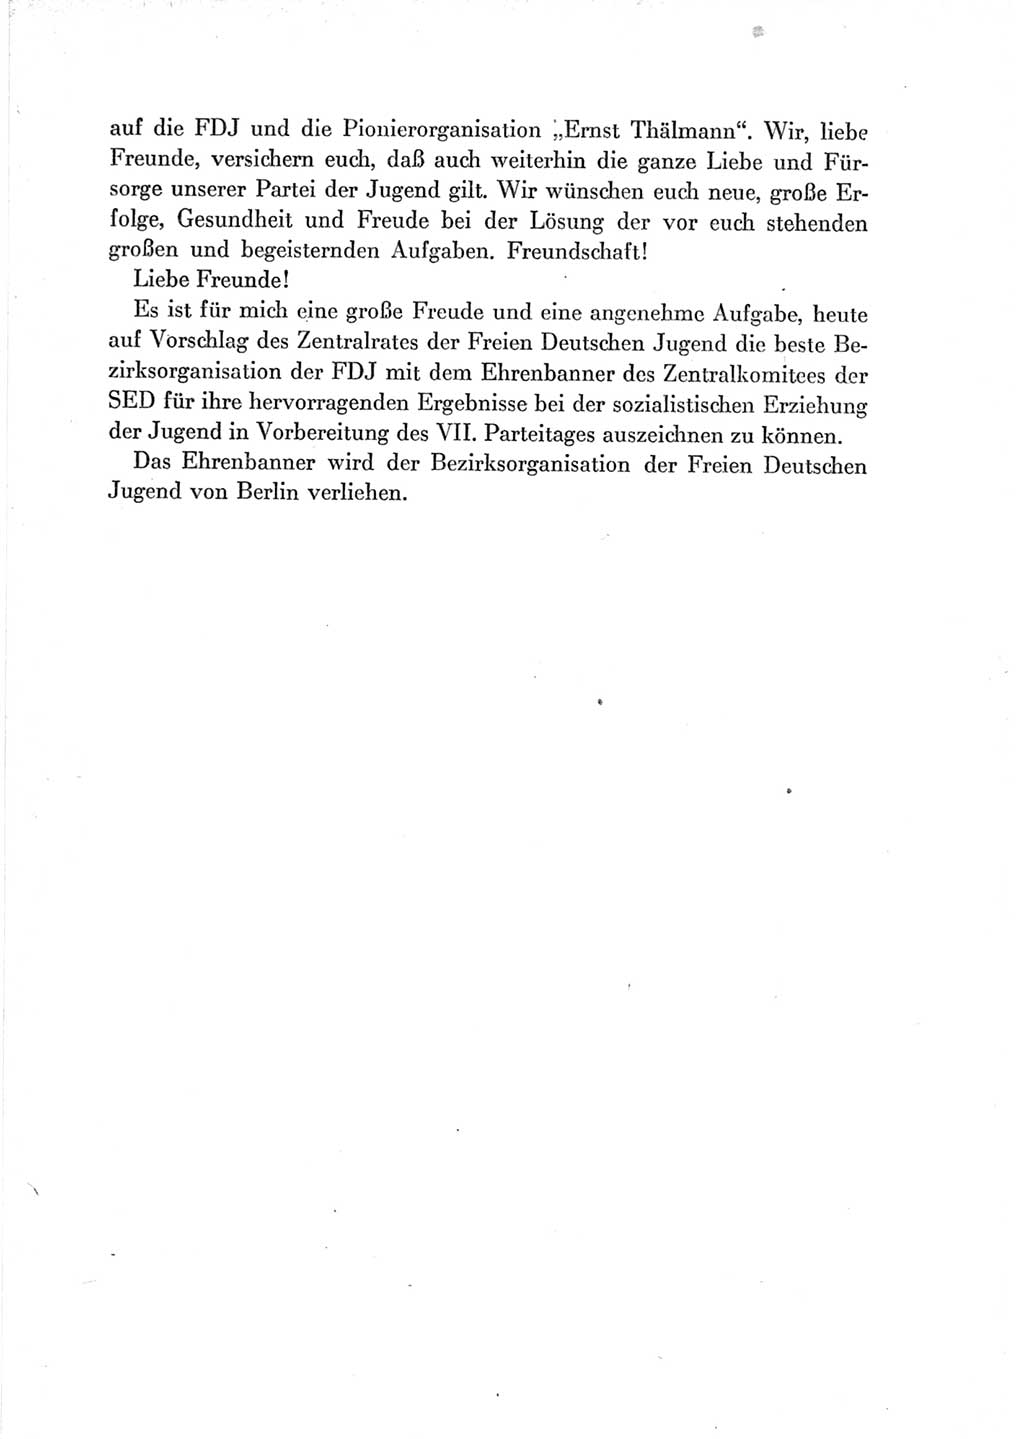 Protokoll der Verhandlungen des Ⅶ. Parteitages der Sozialistischen Einheitspartei Deutschlands (SED) [Deutsche Demokratische Republik (DDR)] 1967, Band Ⅰ, Seite 539 (Prot. Verh. Ⅶ. PT SED DDR 1967, Bd. Ⅰ, S. 539)